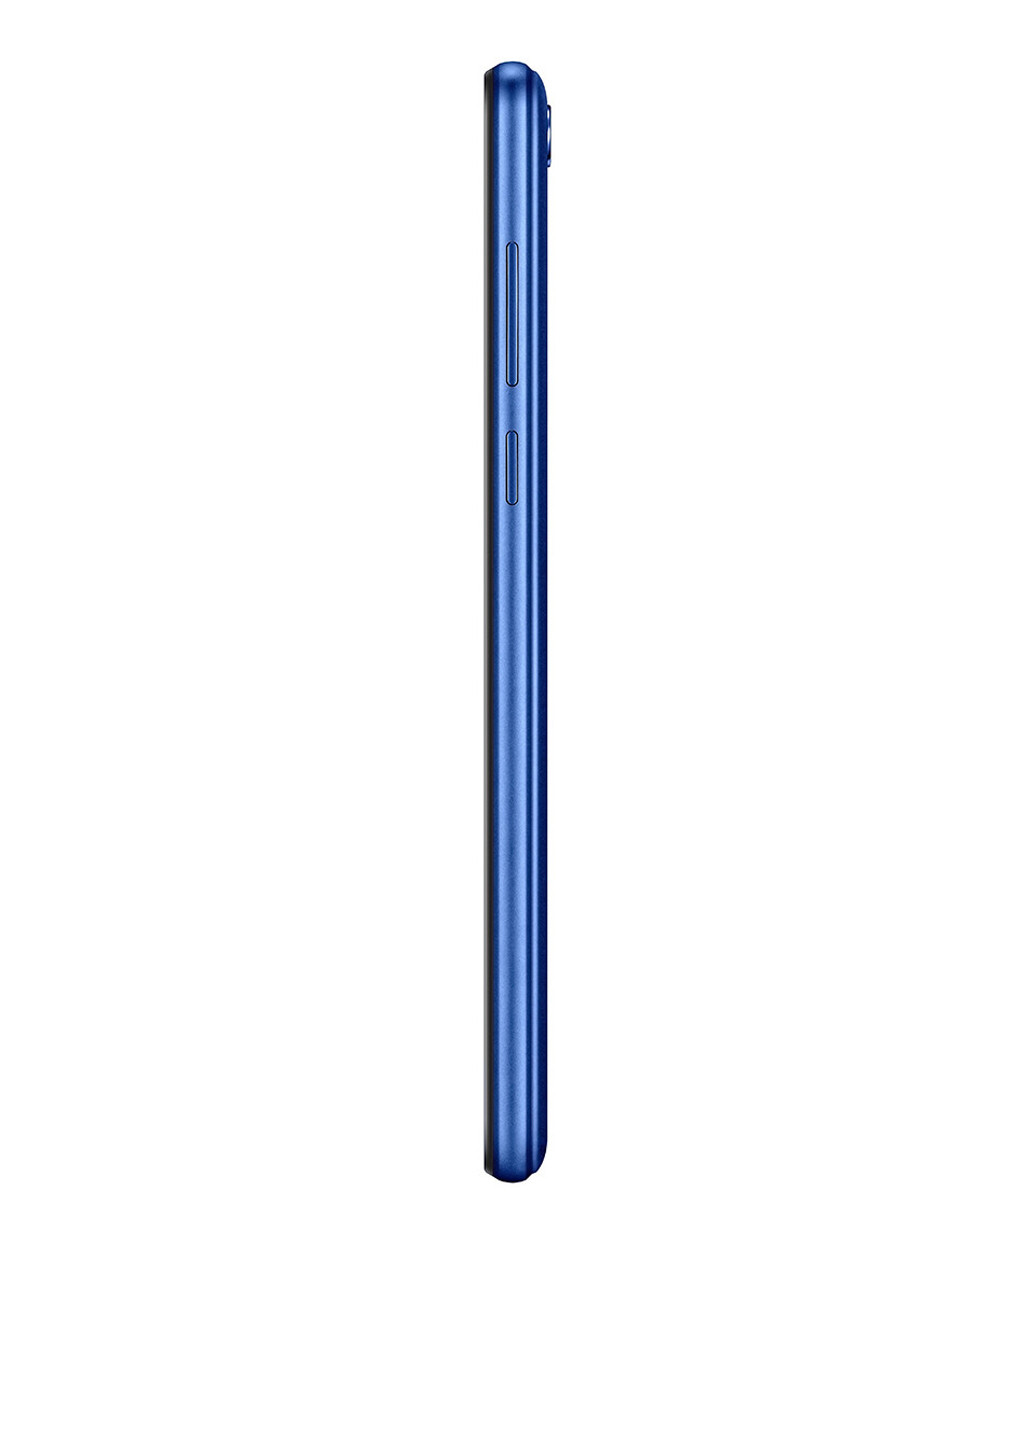 Смартфон Huawei Y5 2018 2/16 Blue (DRA-L21) синий